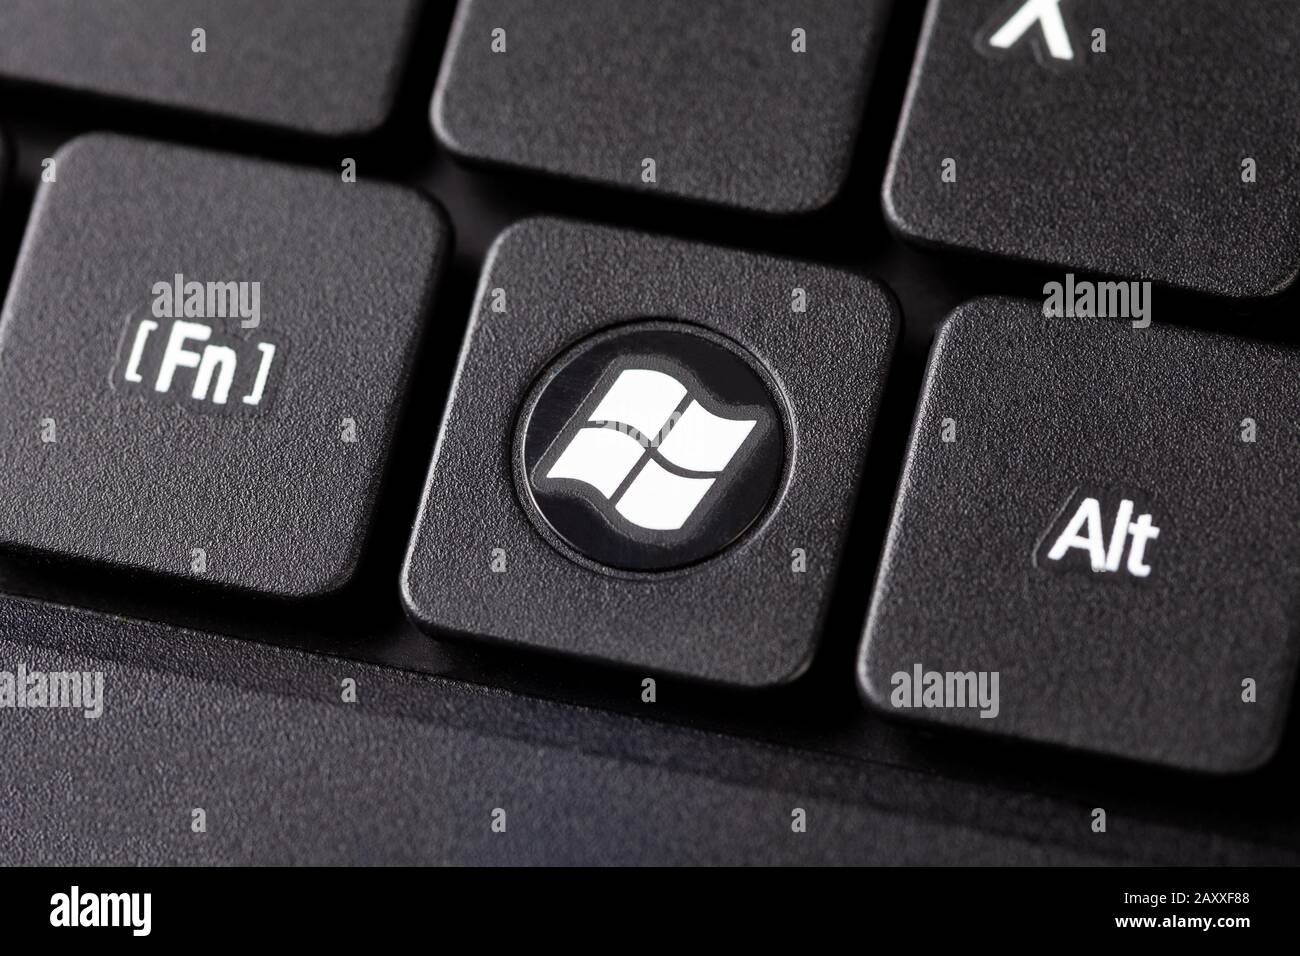 Die Windows-Taste auf einem schwarzen Notebook-Tastatur Makro extreme  Nahaufnahme Draufsicht rund dedizierte Betriebssystem-Taste mit weißem  Windows-Logo Stockfotografie - Alamy